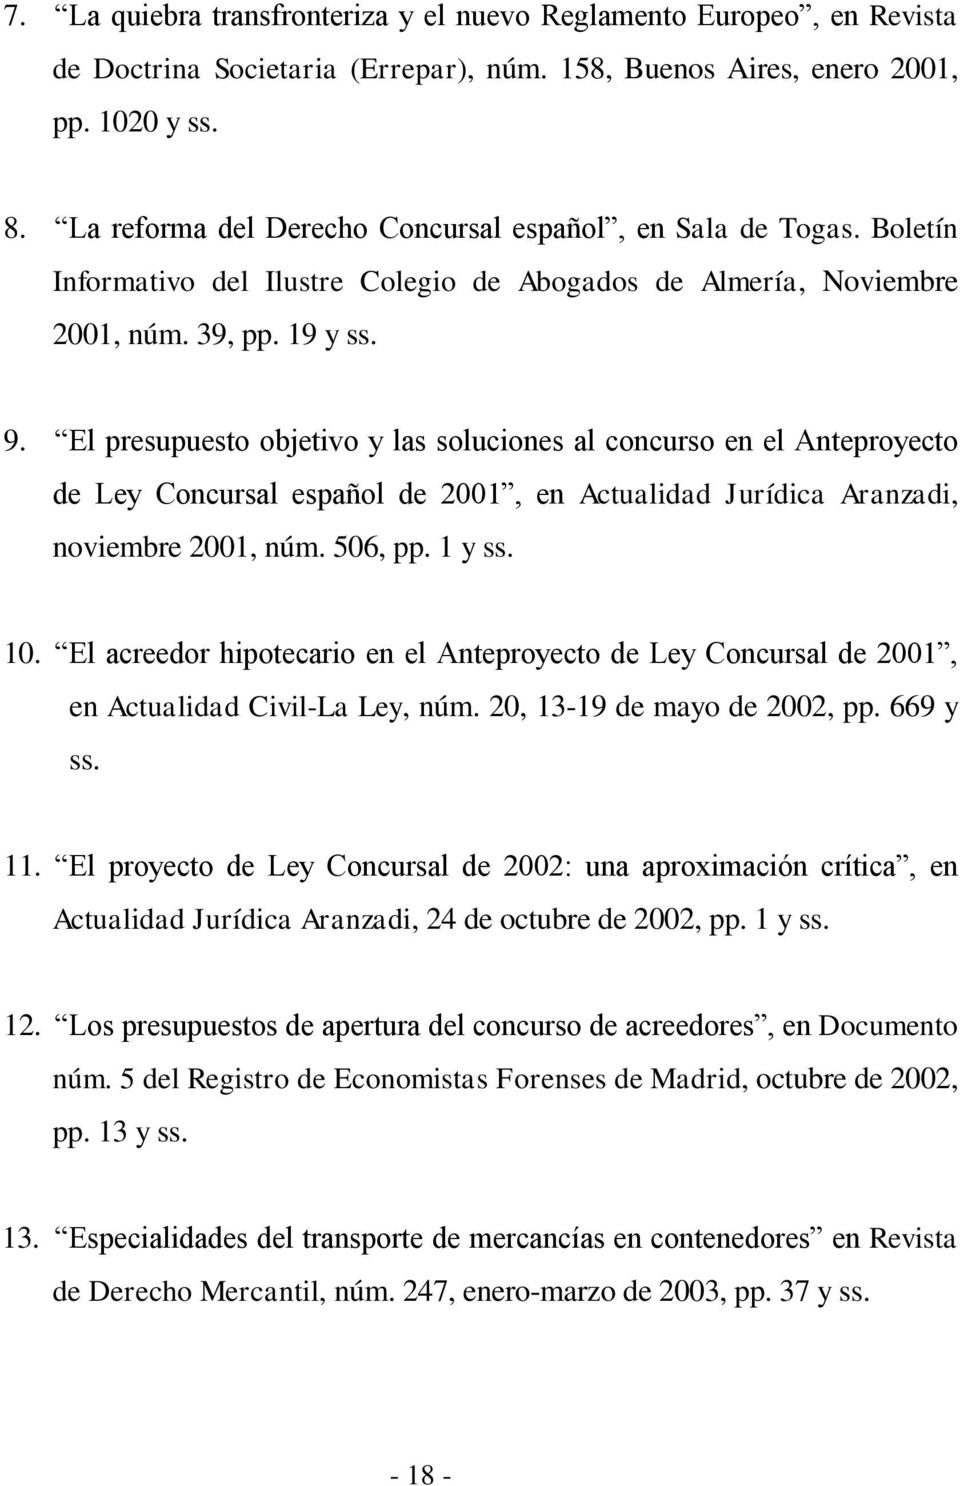 El presupuesto objetivo y las soluciones al concurso en el Anteproyecto de Ley Concursal español de 2001, en Actualidad Jurídica Aranzadi, noviembre 2001, núm. 506, pp. 1 y ss. 10.